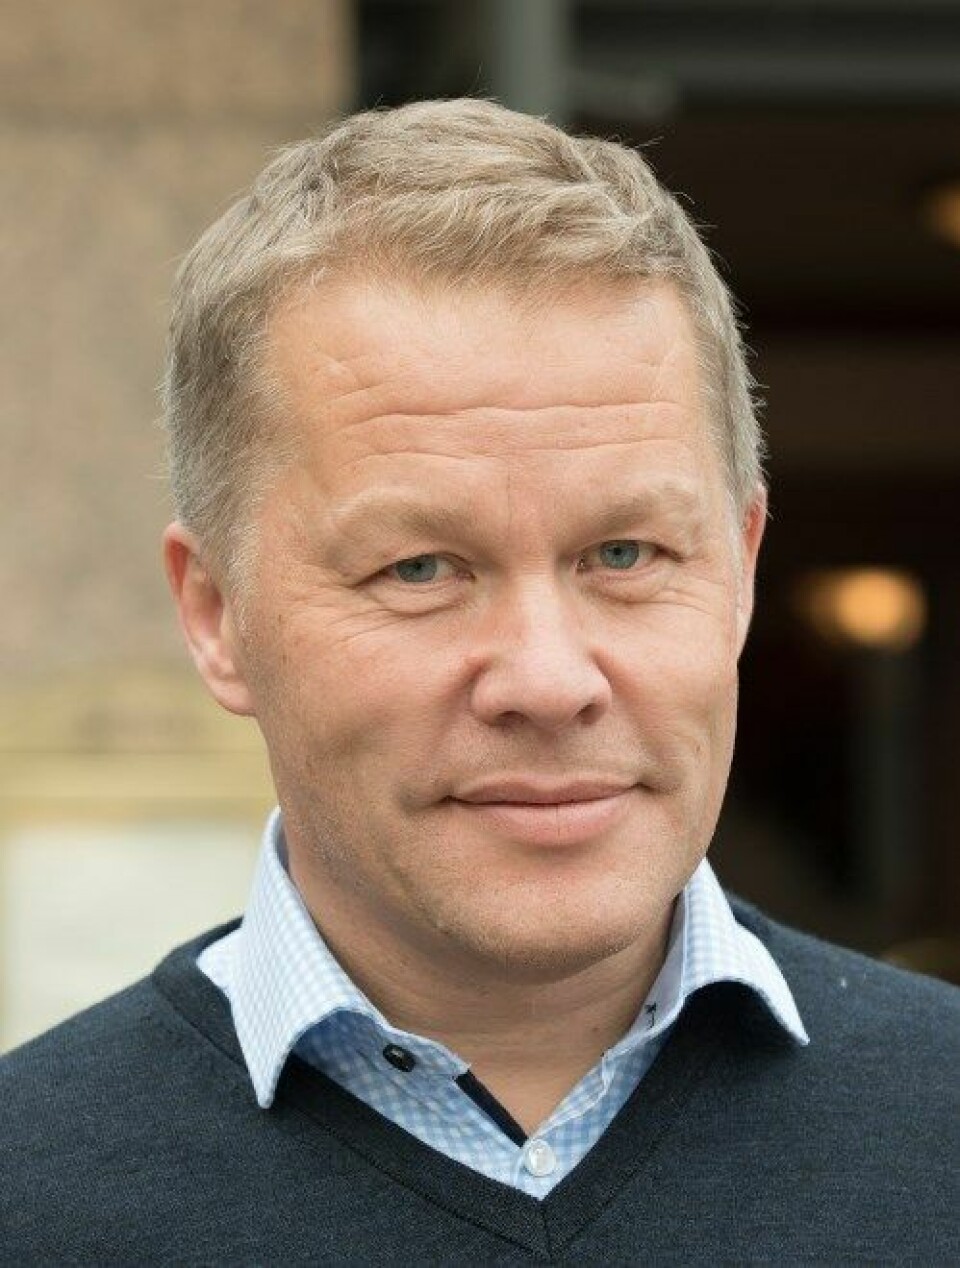 IKKE DETALJSTYRING: – Fastlegene ønsker mer interesserte kommuner, men ikke detaljstyring, sier Petter Brelin i Norsk forening for allmennmedisin (NFA).